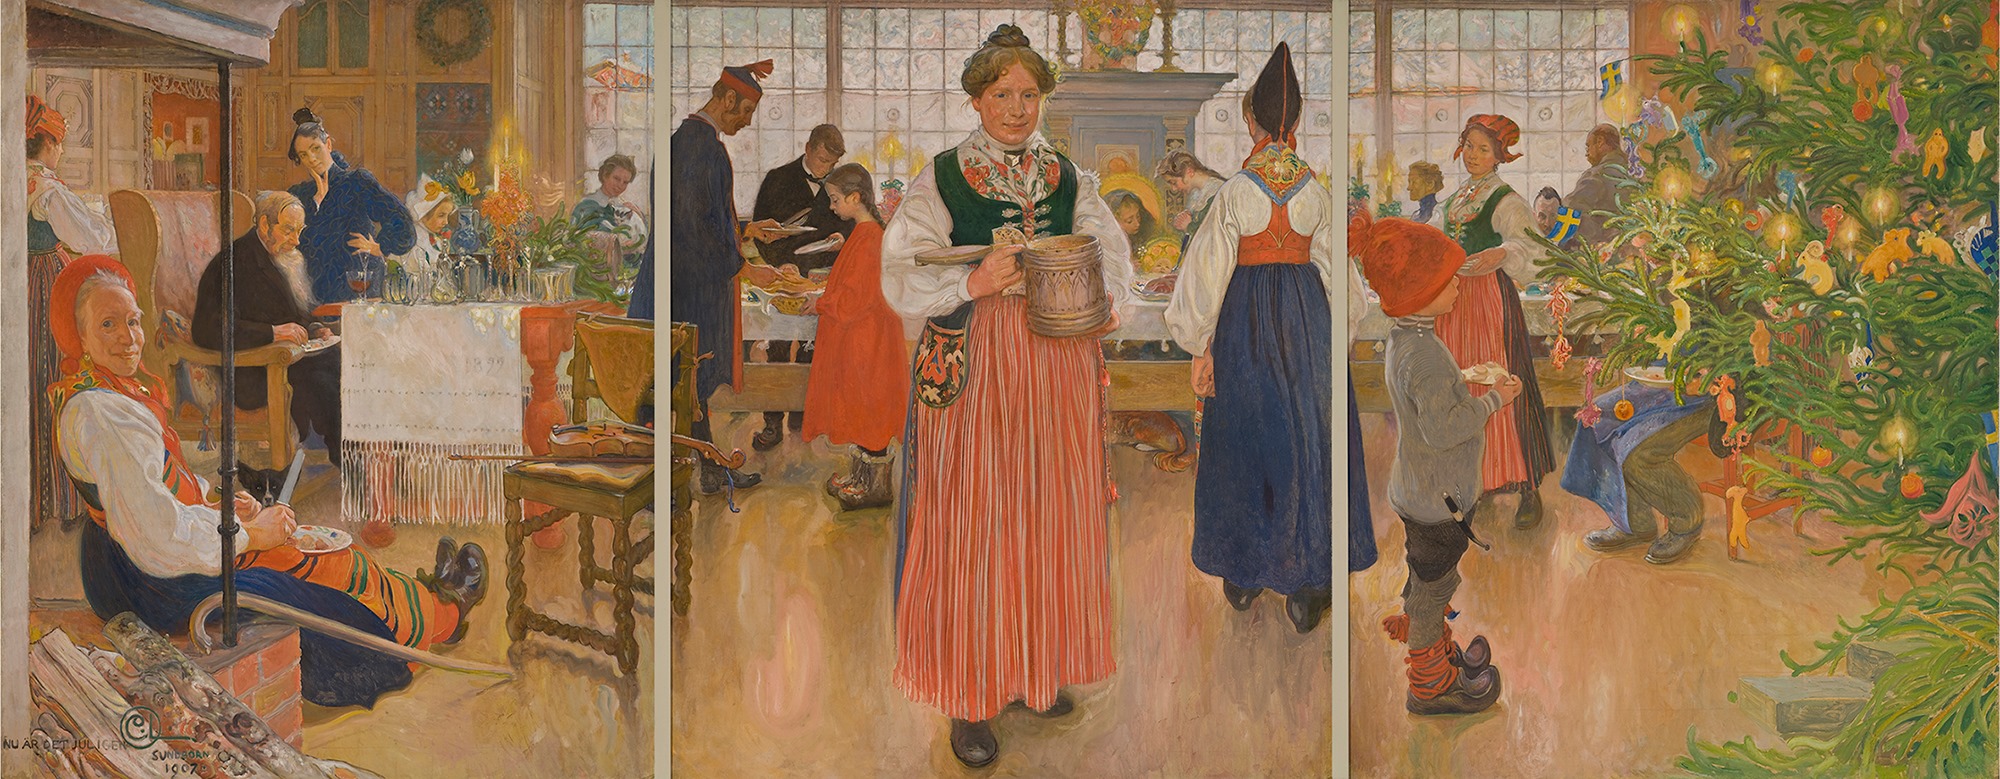 다시 성탄절이 왔어요 by Carl Larsson - 1907년 - 180 × 456 cm 